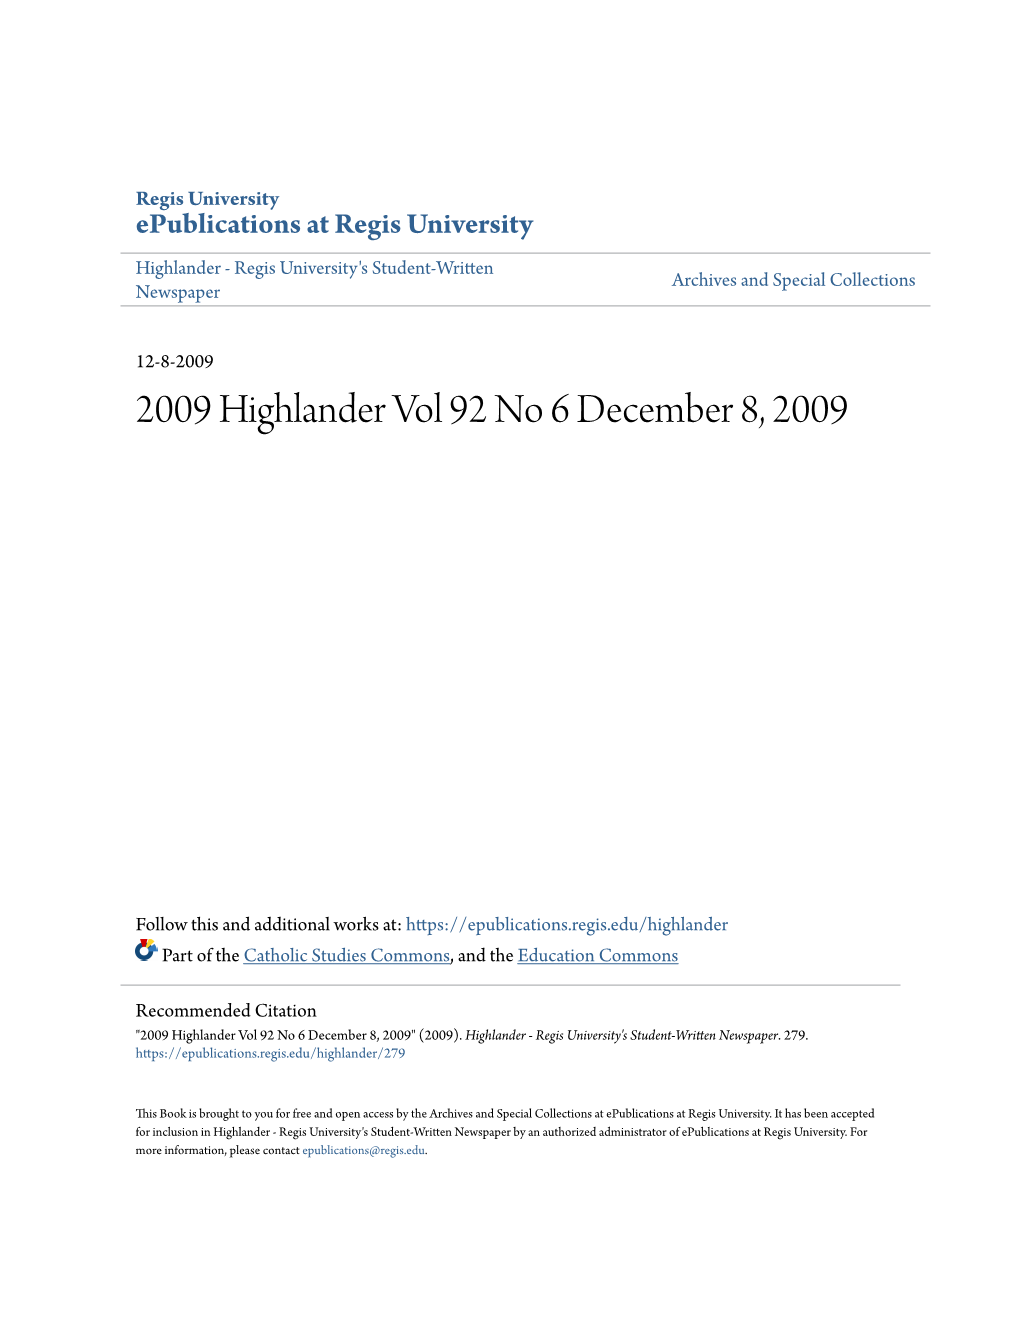 2009 Highlander Vol 92 No 6 December 8, 2009